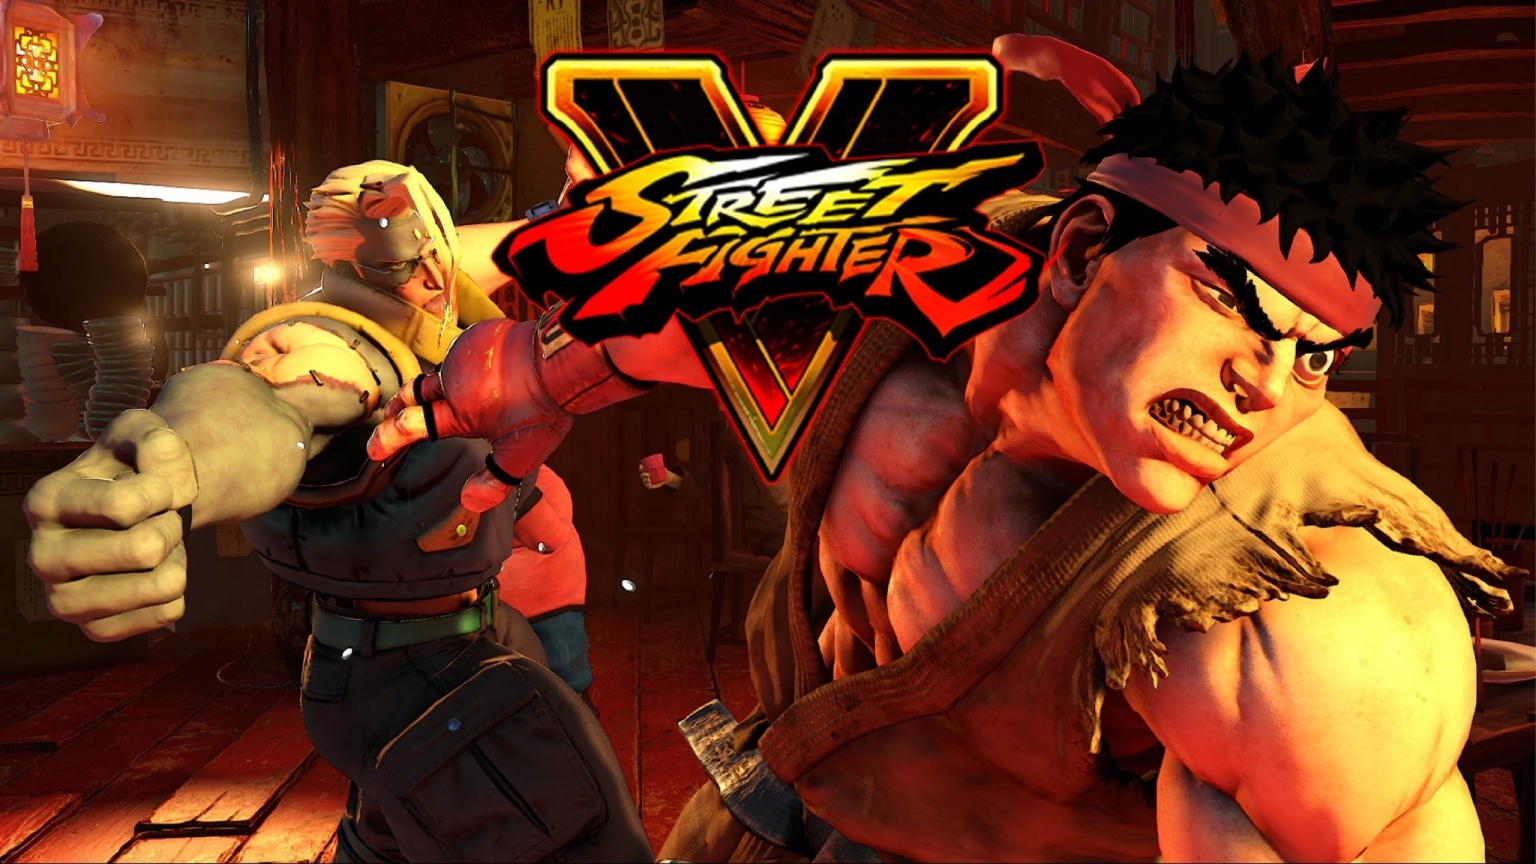 Street Fighter V Poster for 1536 x 864 HDTV resolution